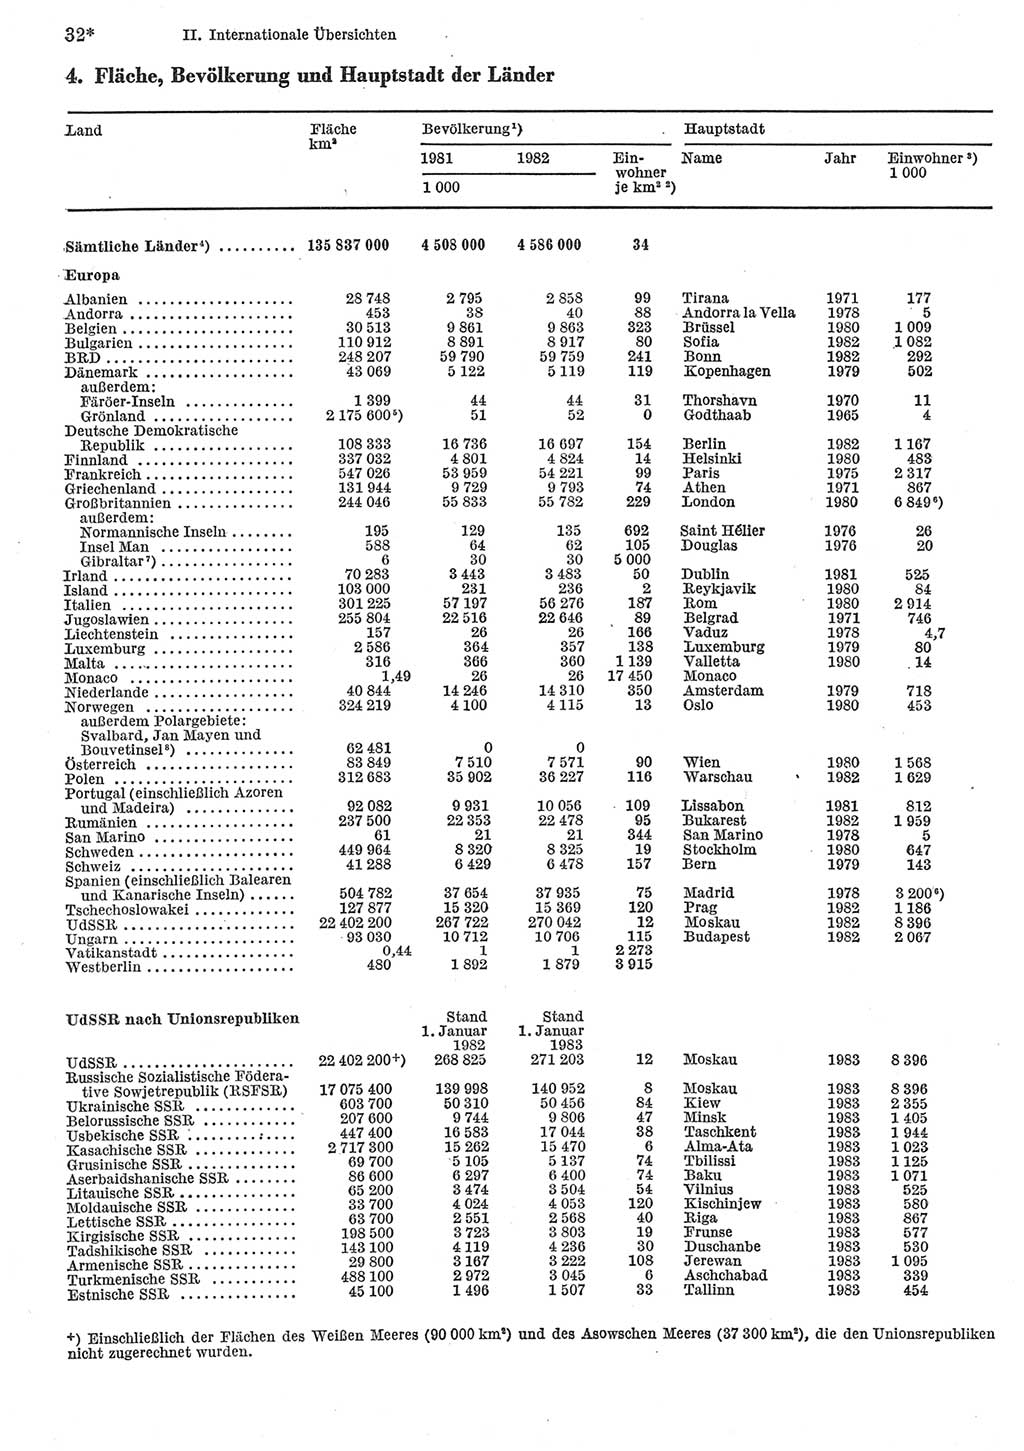 Statistisches Jahrbuch der Deutschen Demokratischen Republik (DDR) 1984, Seite 32 (Stat. Jb. DDR 1984, S. 32)